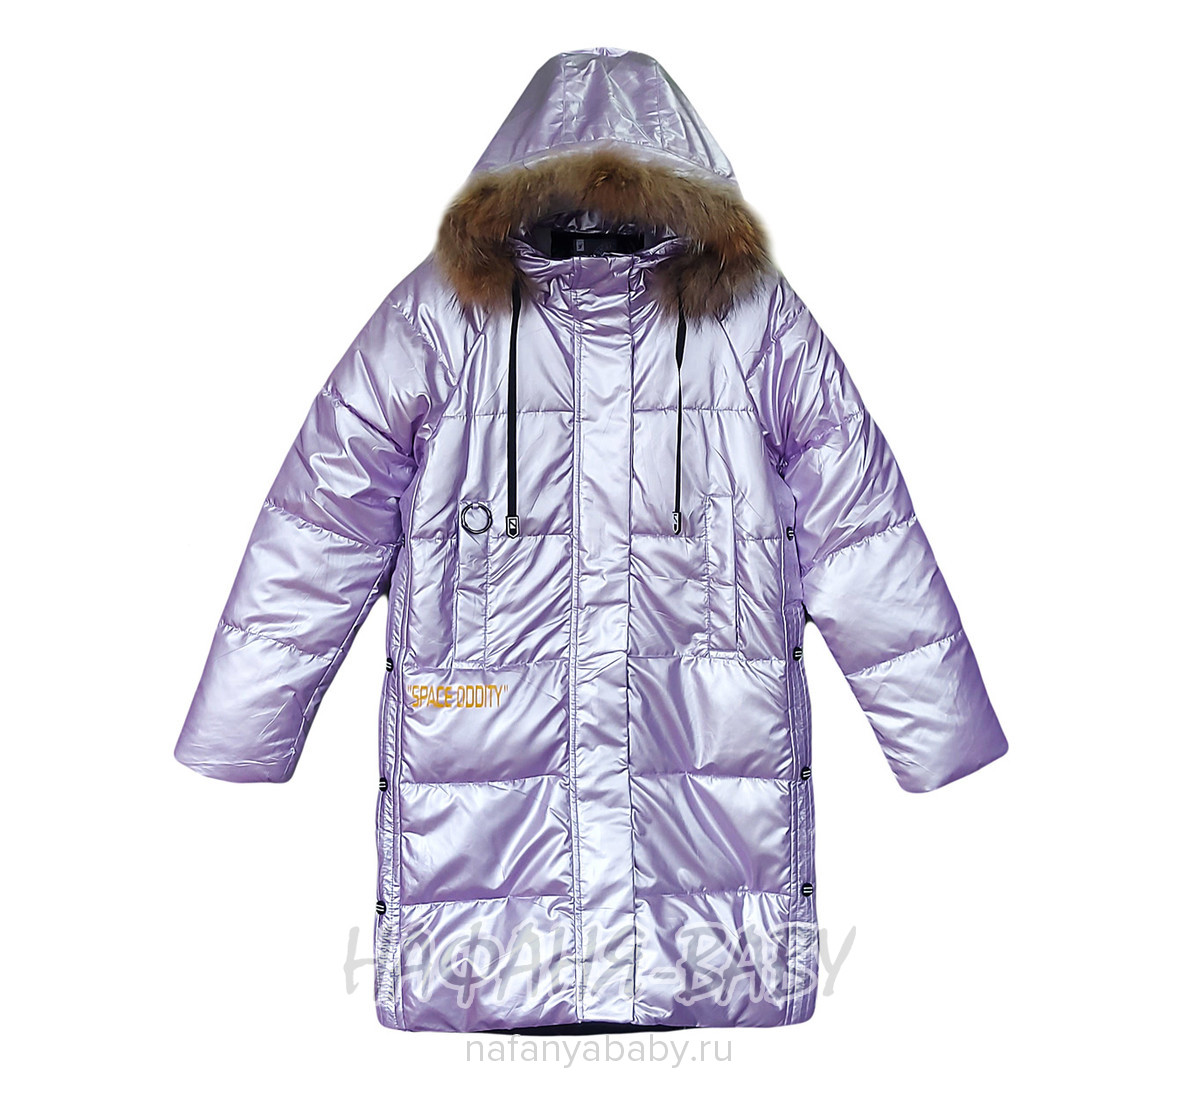 Зимнее подростковое пальто YOI LI, купить в интернет магазине Нафаня. арт: 225.